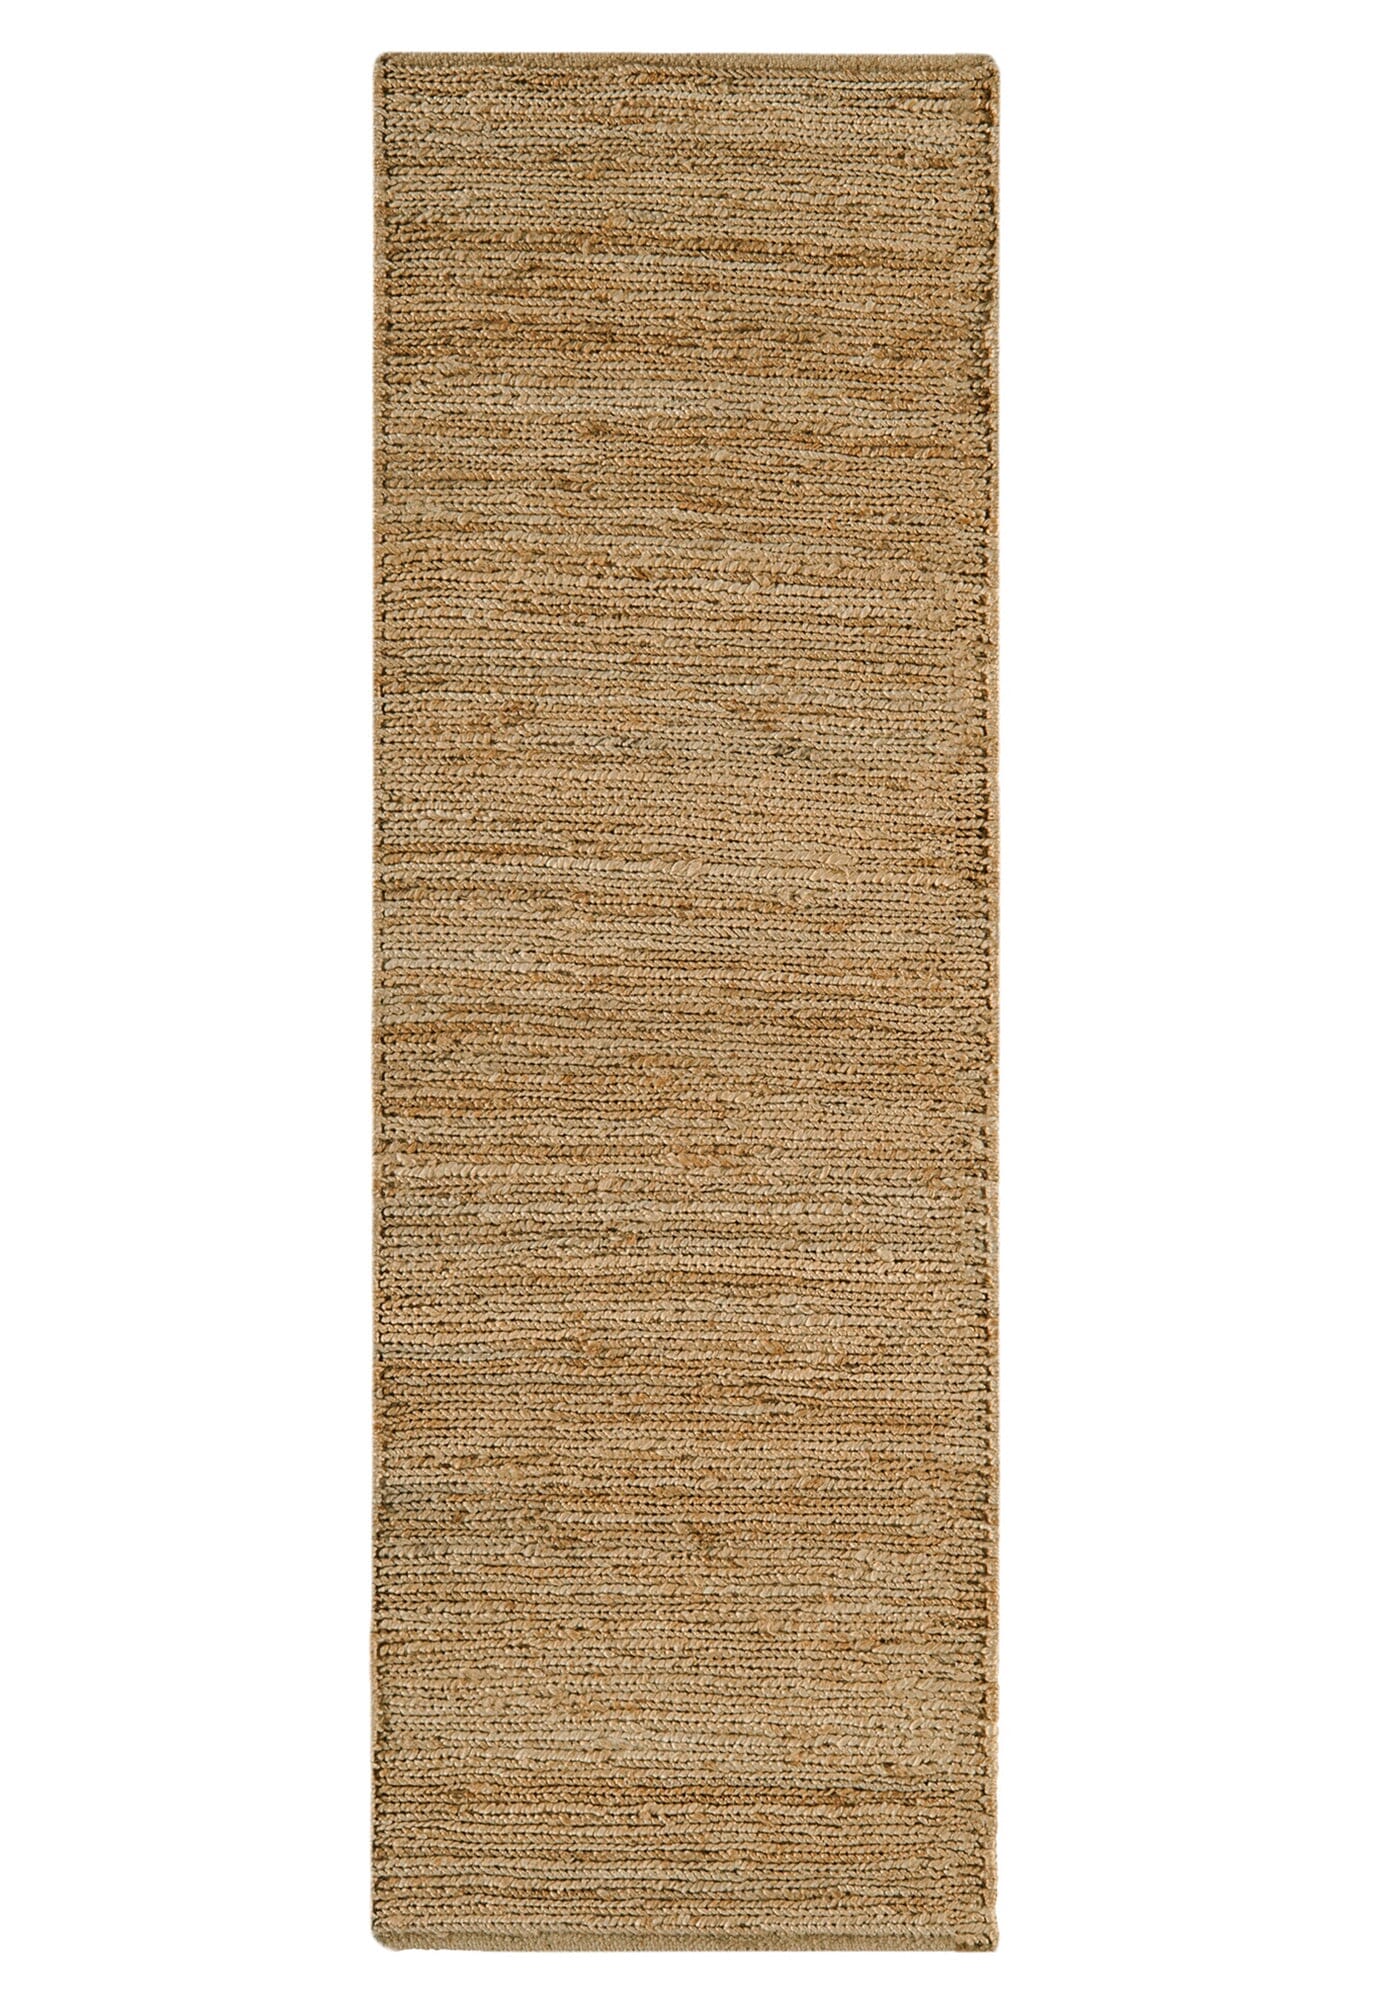 Asiatic Carpets Soumak Hand Woven Runner Natural - 66 x 200cm